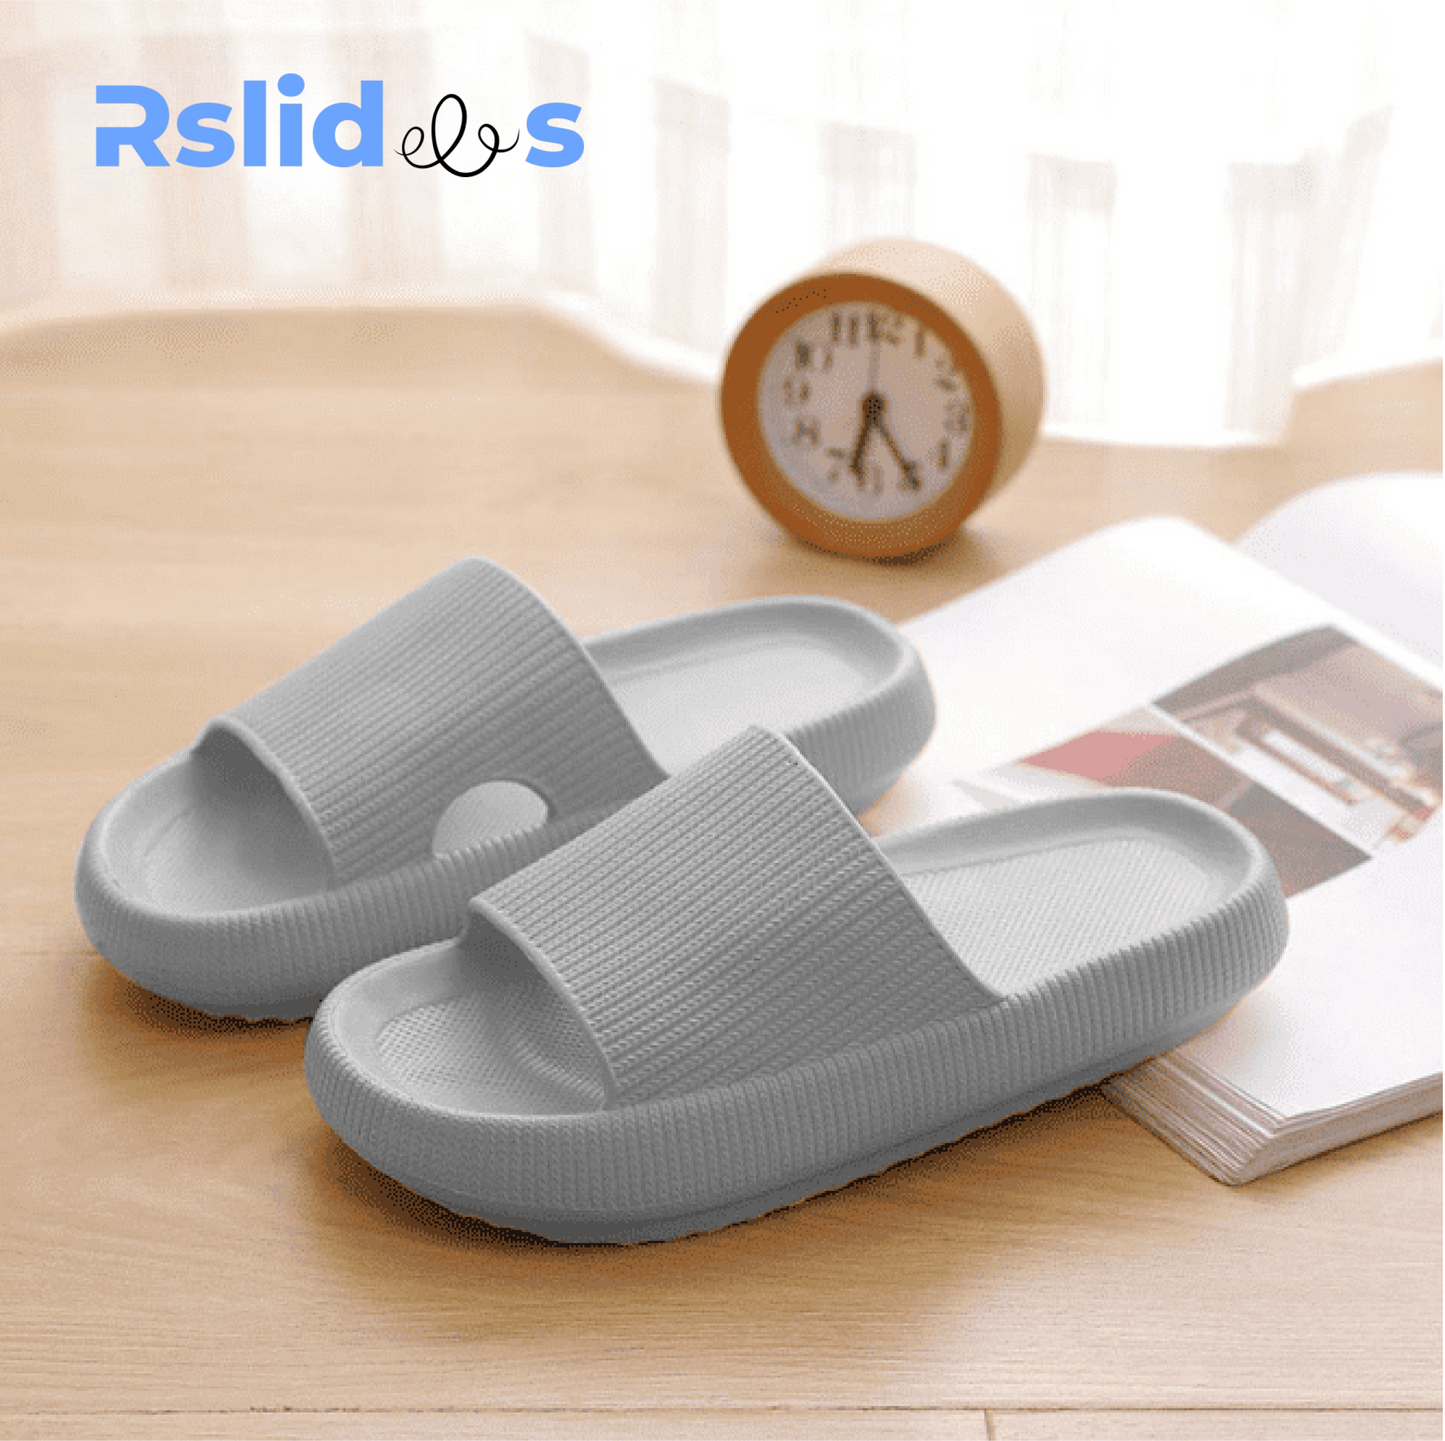 The Rslides ™: Cloud sandals